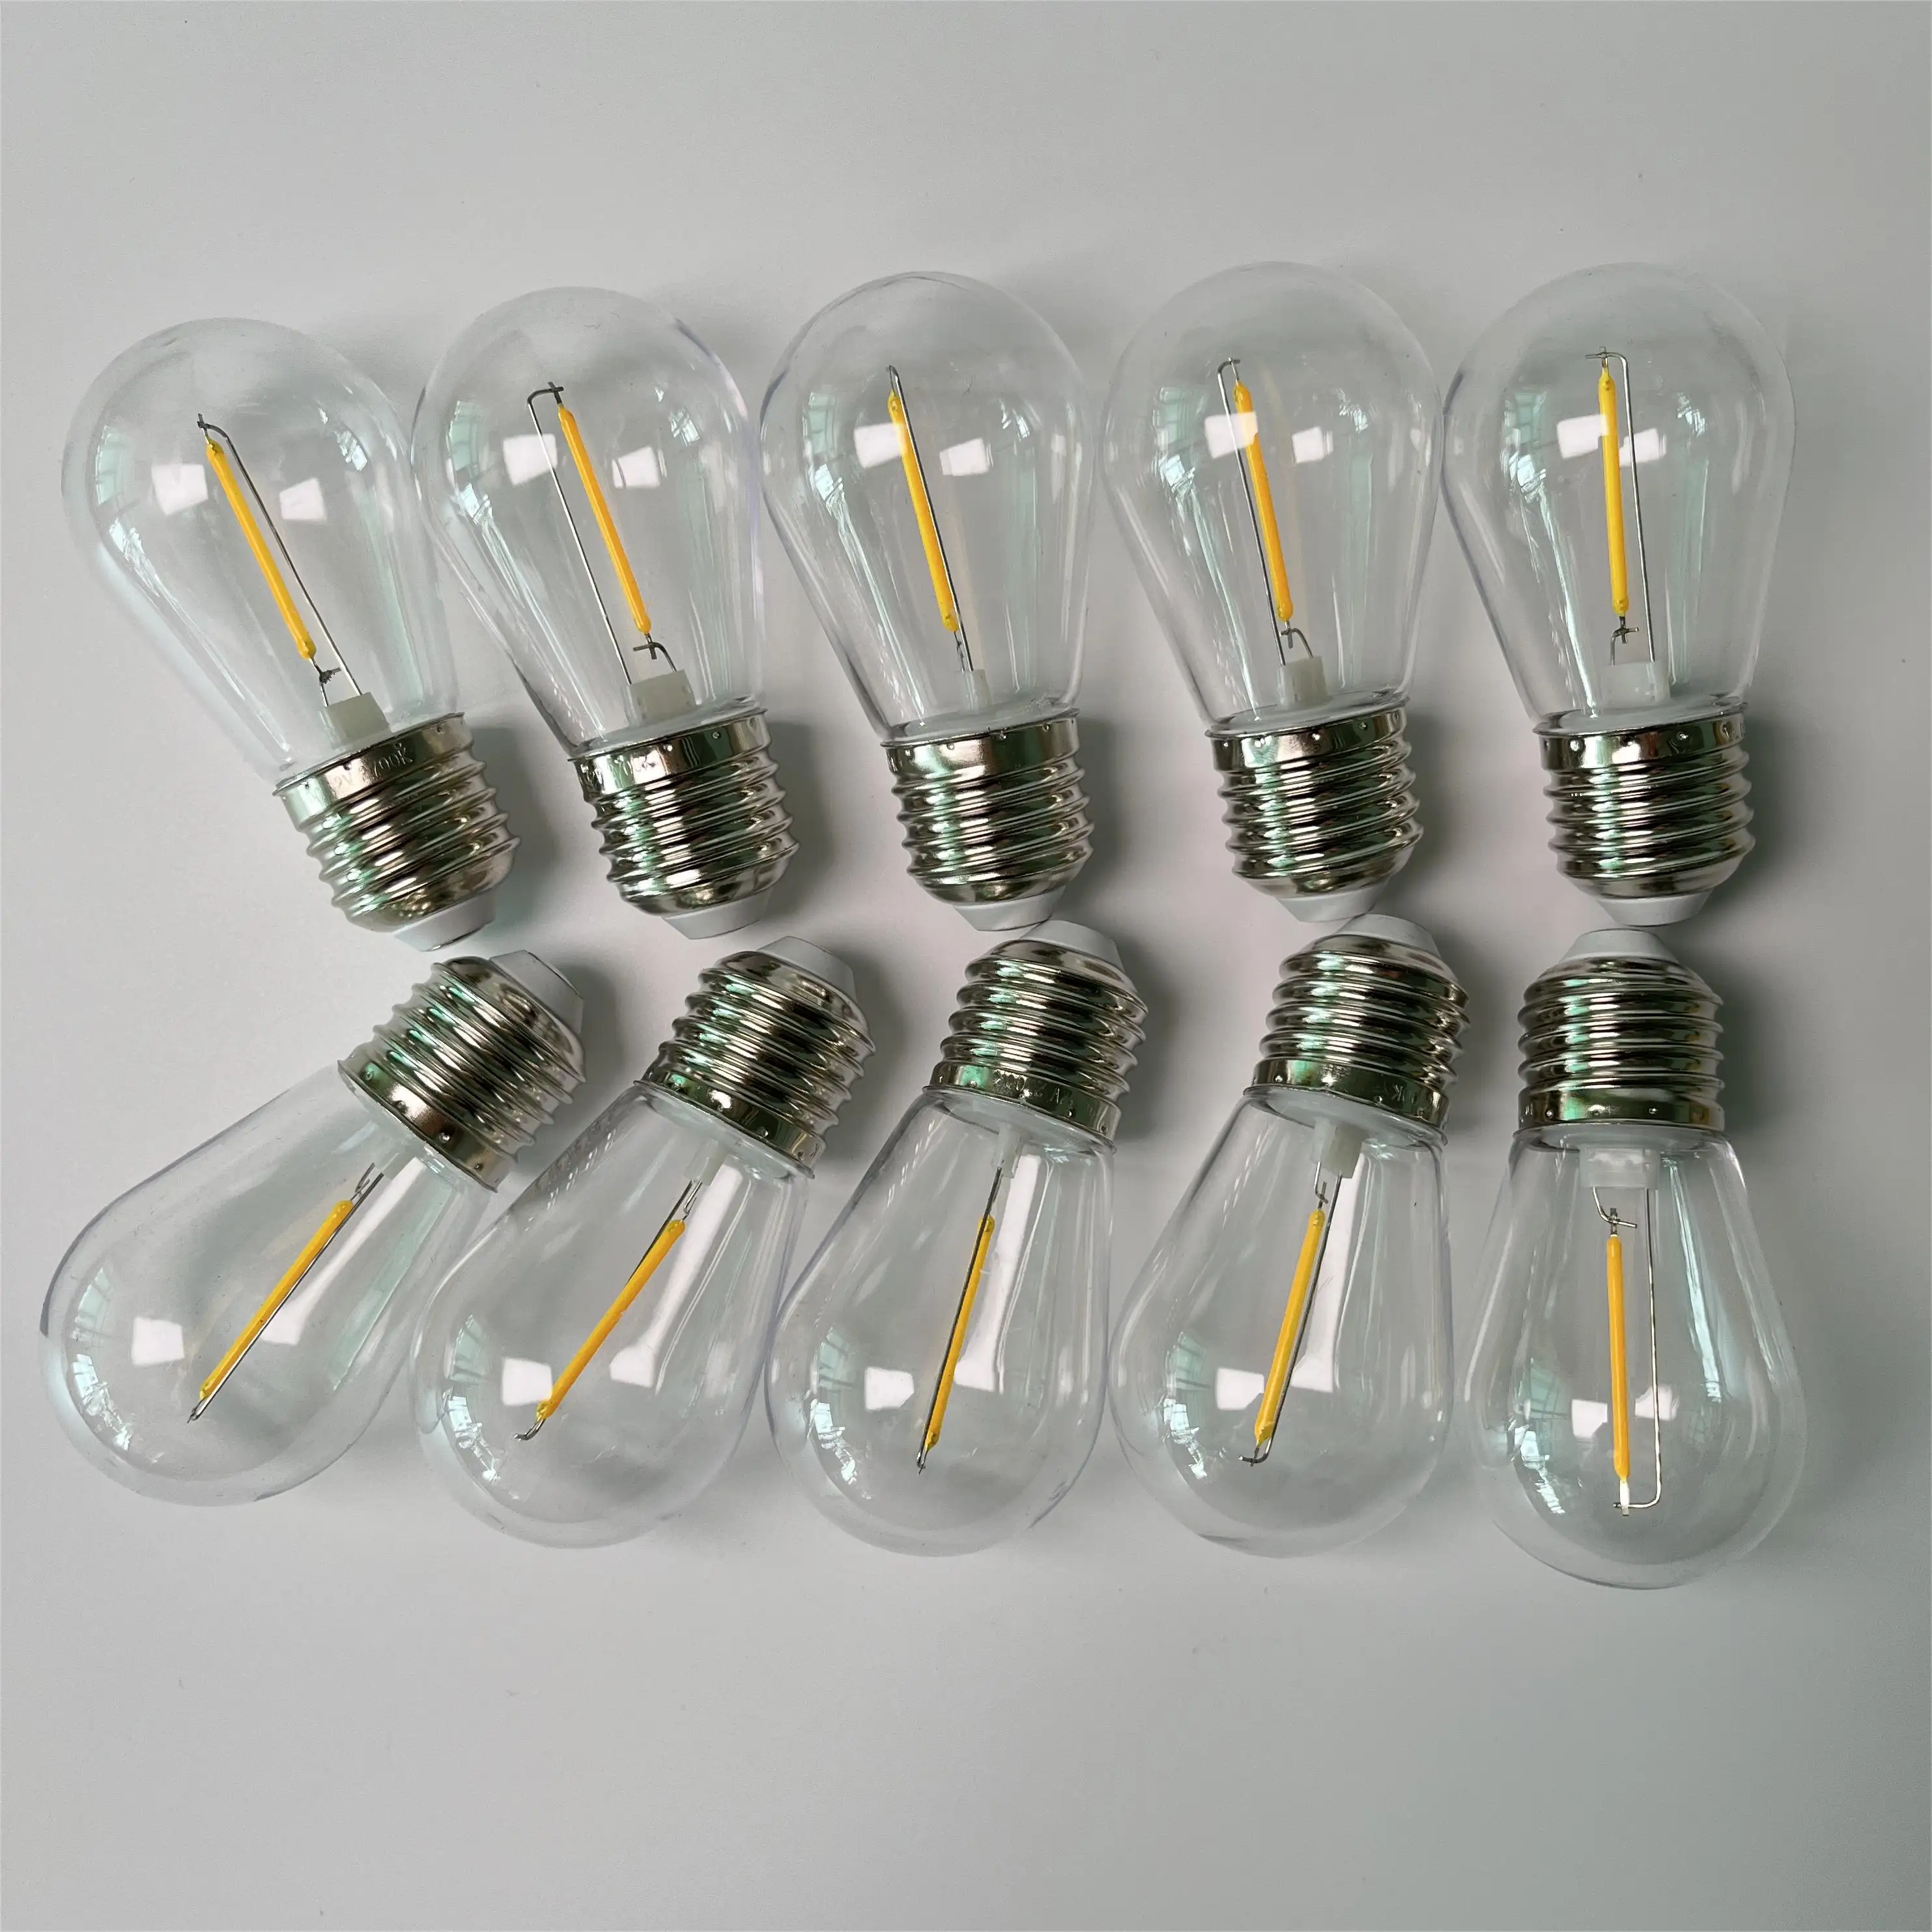 Ampoules à filament LED S14 ampoules supplémentaires ampoules remplaçables pour guirlandes lumineuses LED extérieures lumières feston